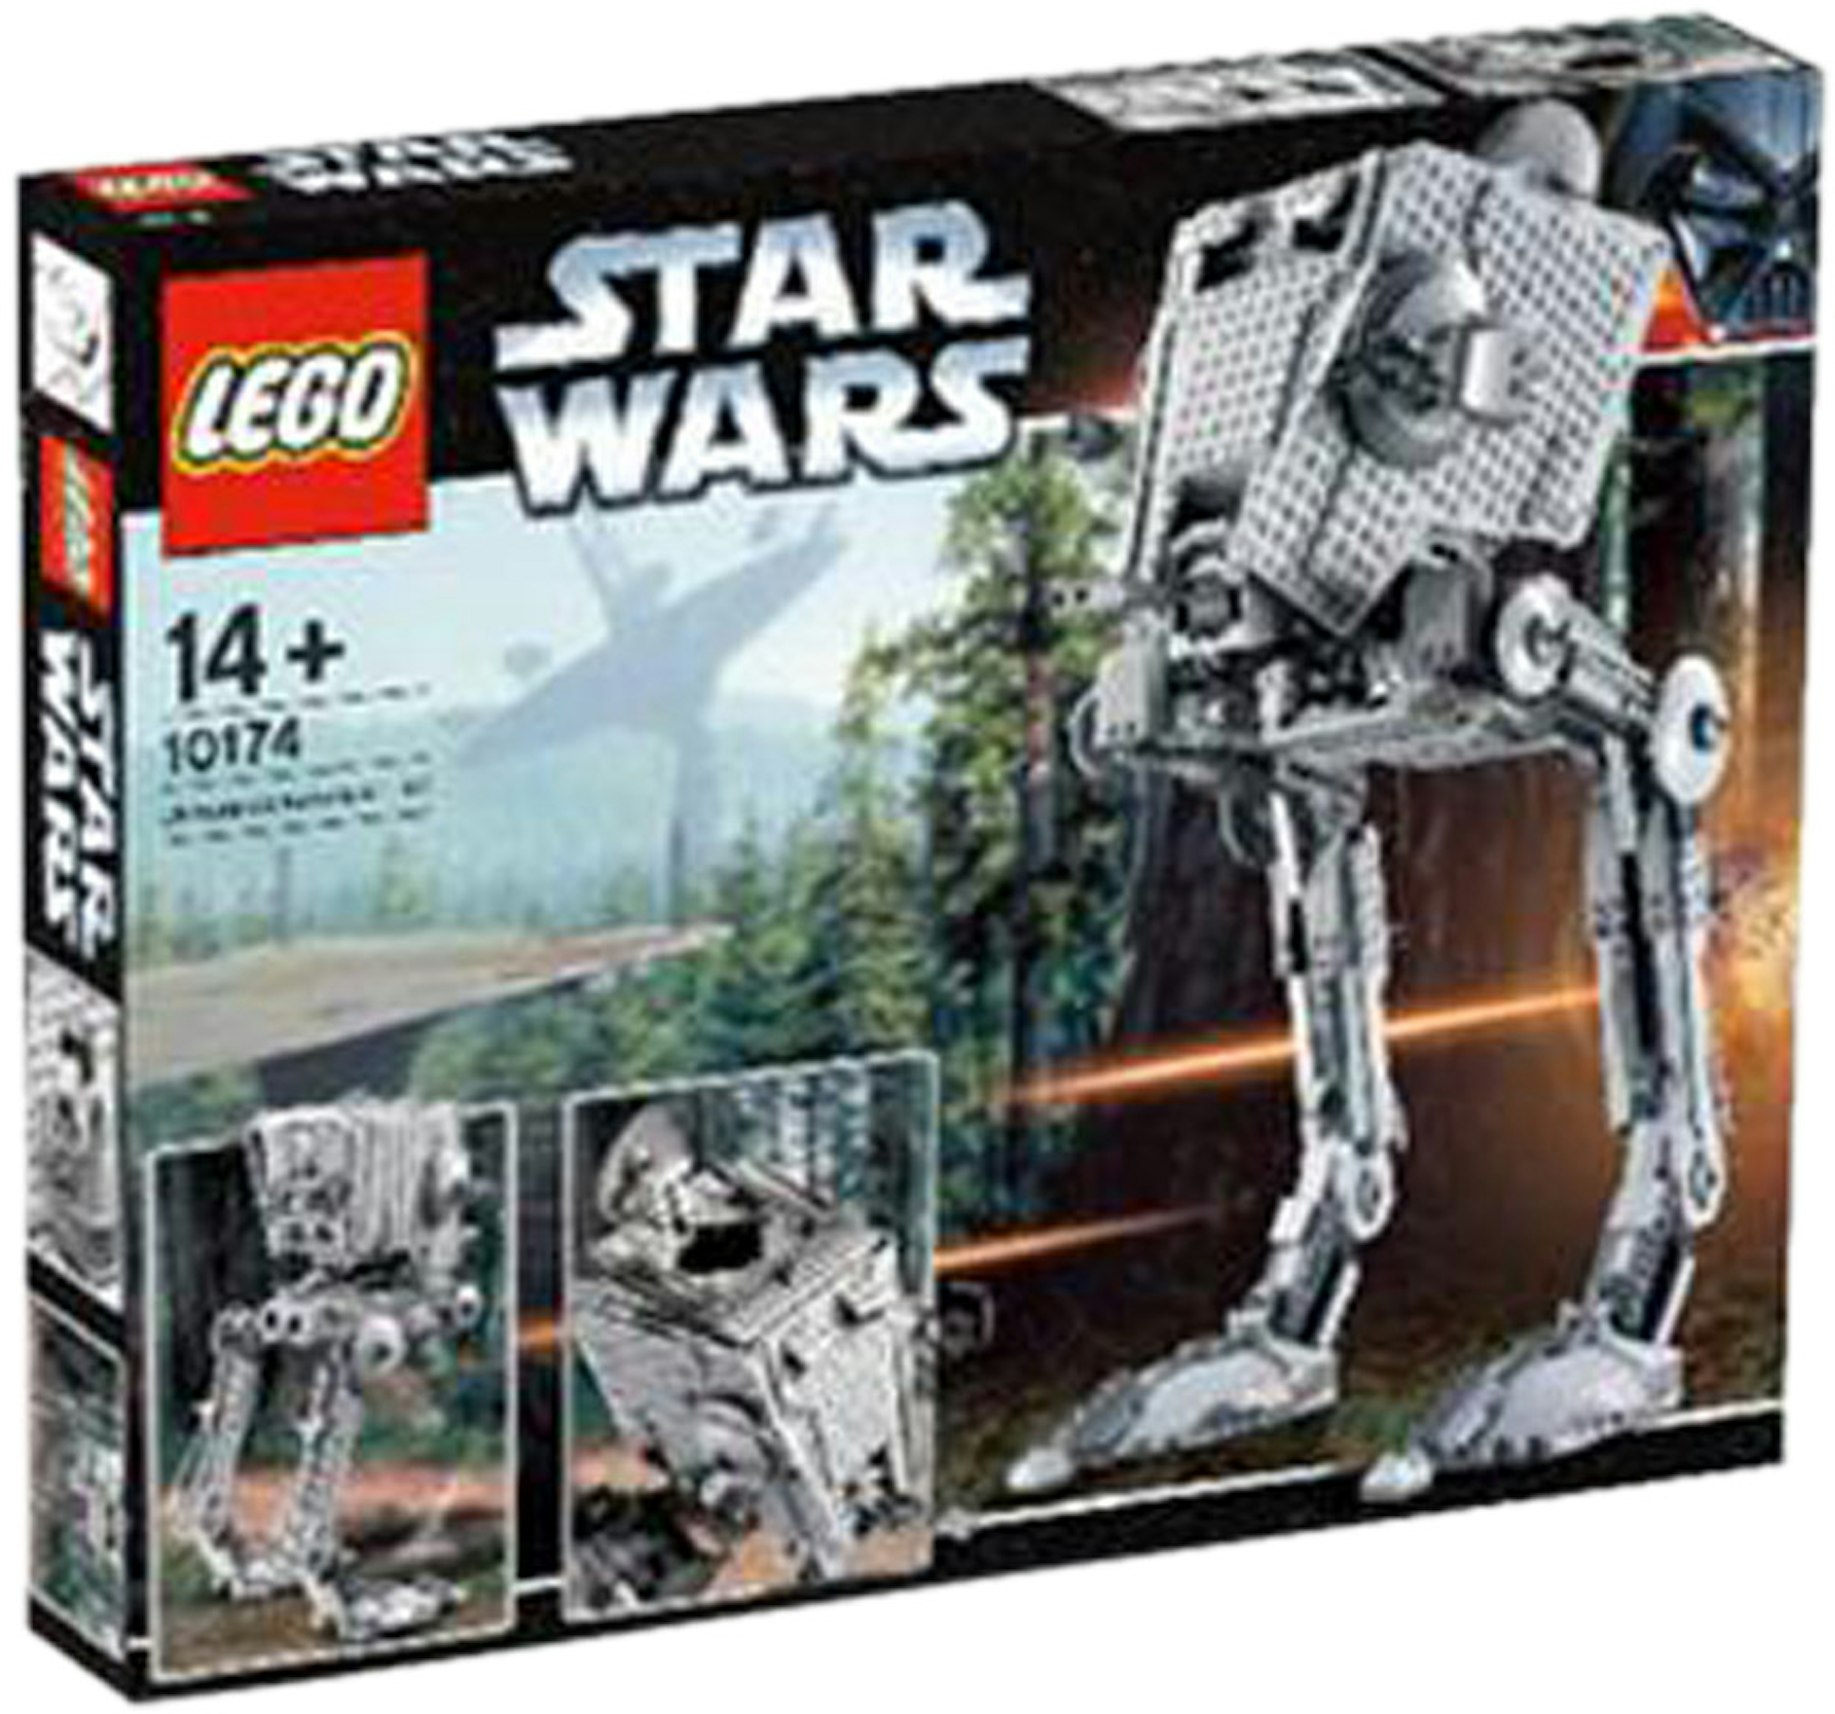 I modsætning til Forkæle Parametre LEGO Star Wars Imperial AT-ST Set 10174 - US